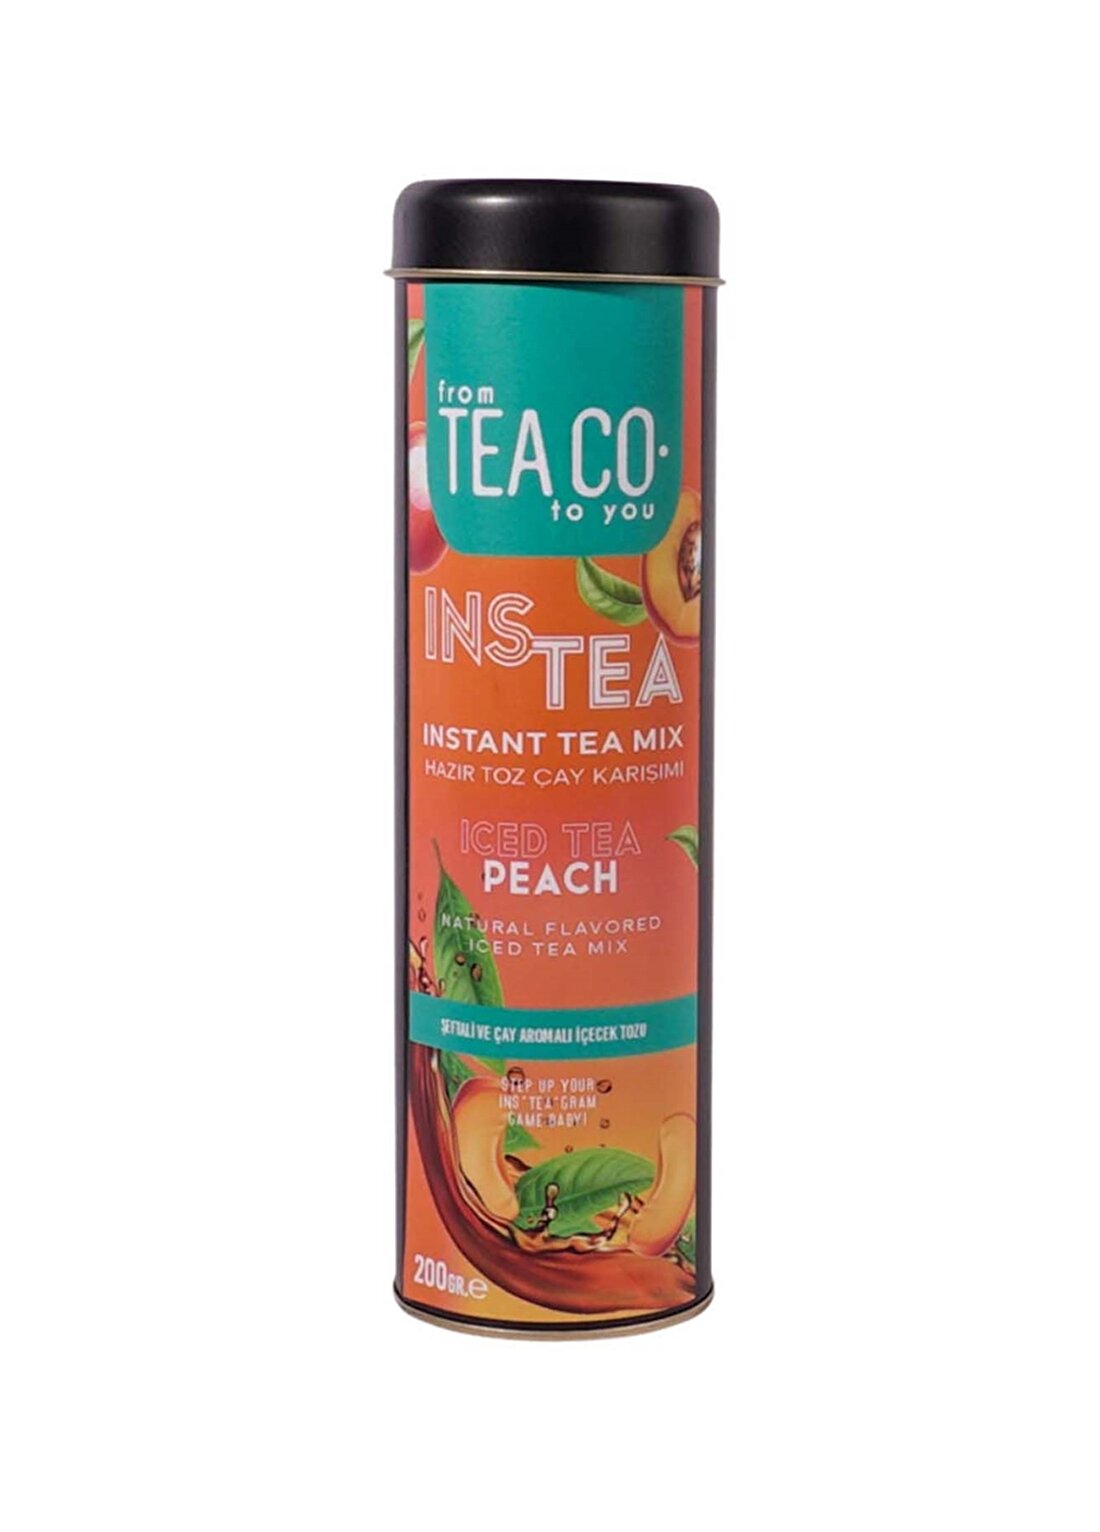 Tea Co - Instea Peach - Şeftalili Ve Siyah Çay Ekstratlı İçecek Tozu - 200Gr